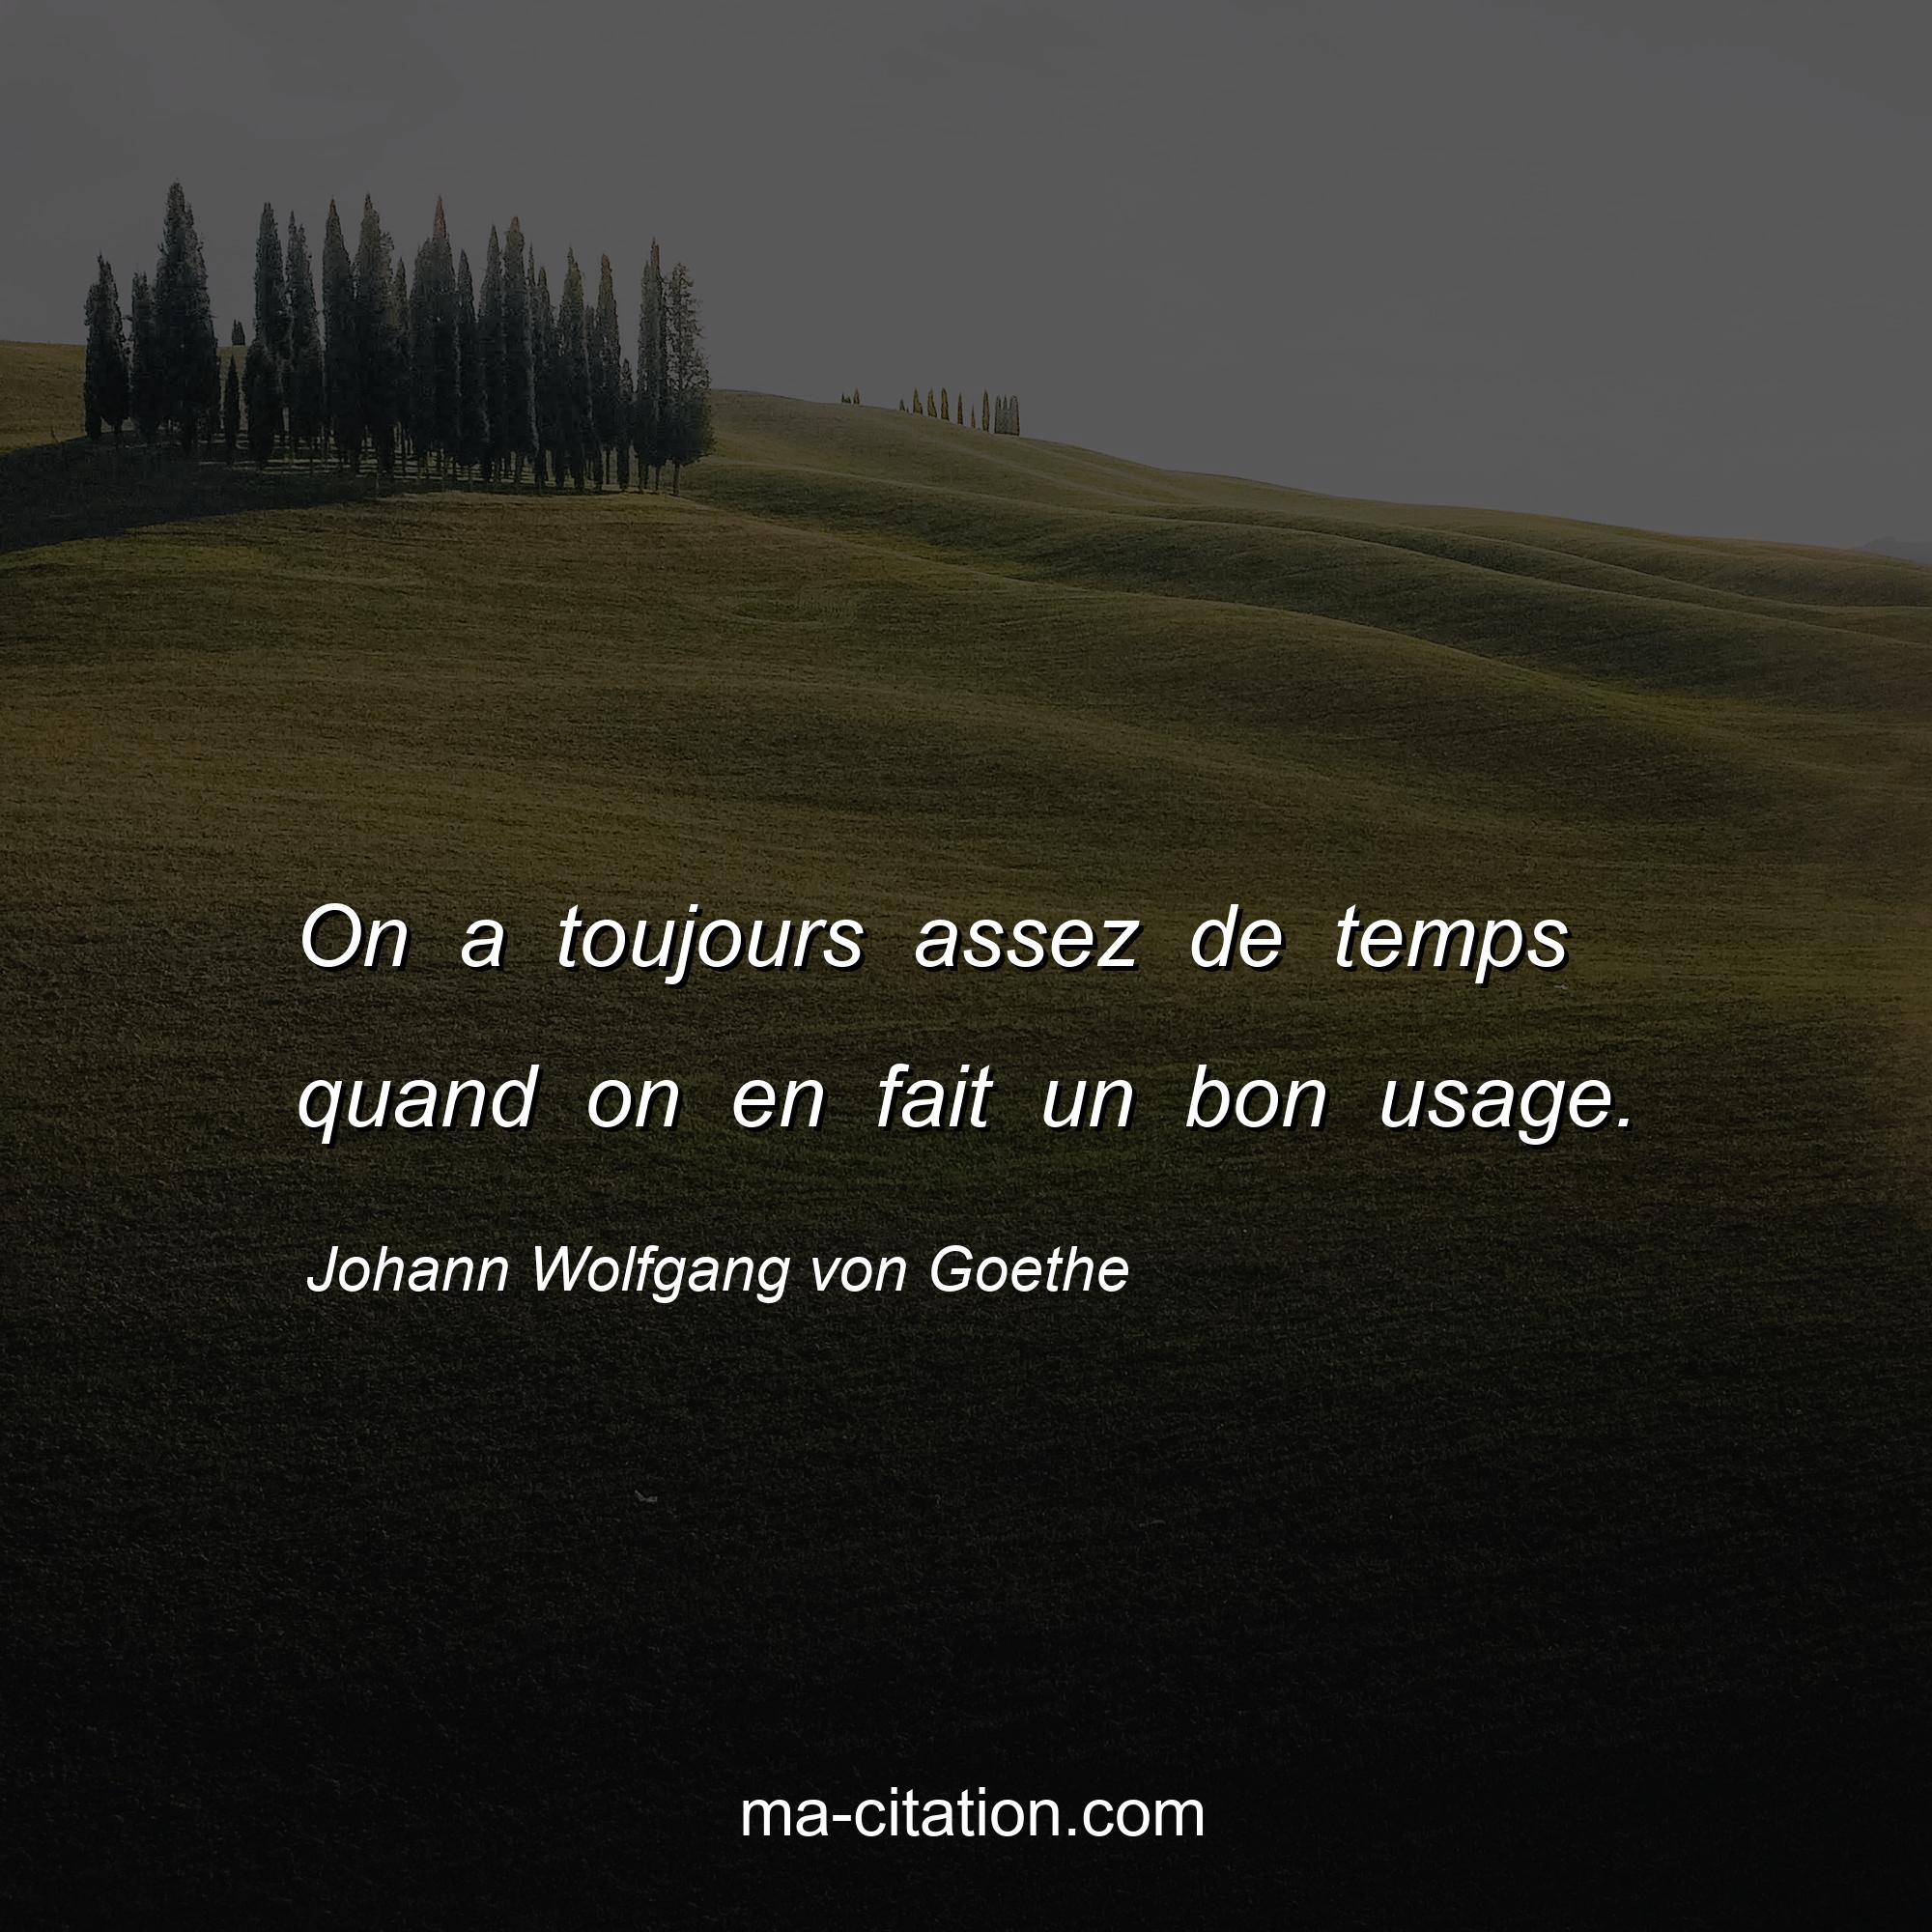 Johann Wolfgang von Goethe : On a toujours assez de temps quand on en fait un bon usage.